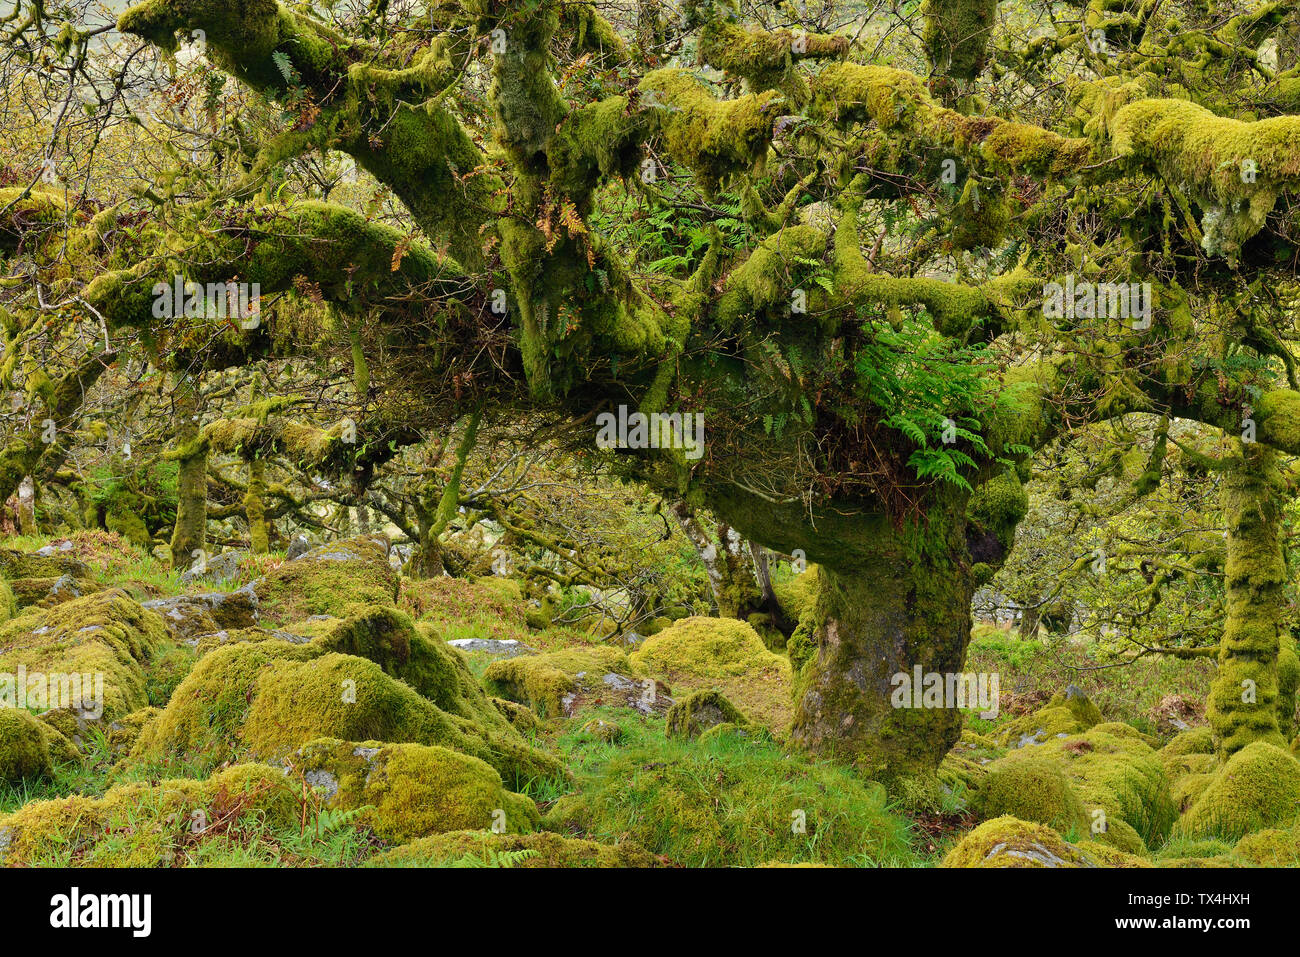 Regno Unito, Inghilterra, Parco Nazionale di Dartmoor, alberi e massi di granito sono ricoperta con moss Foto Stock